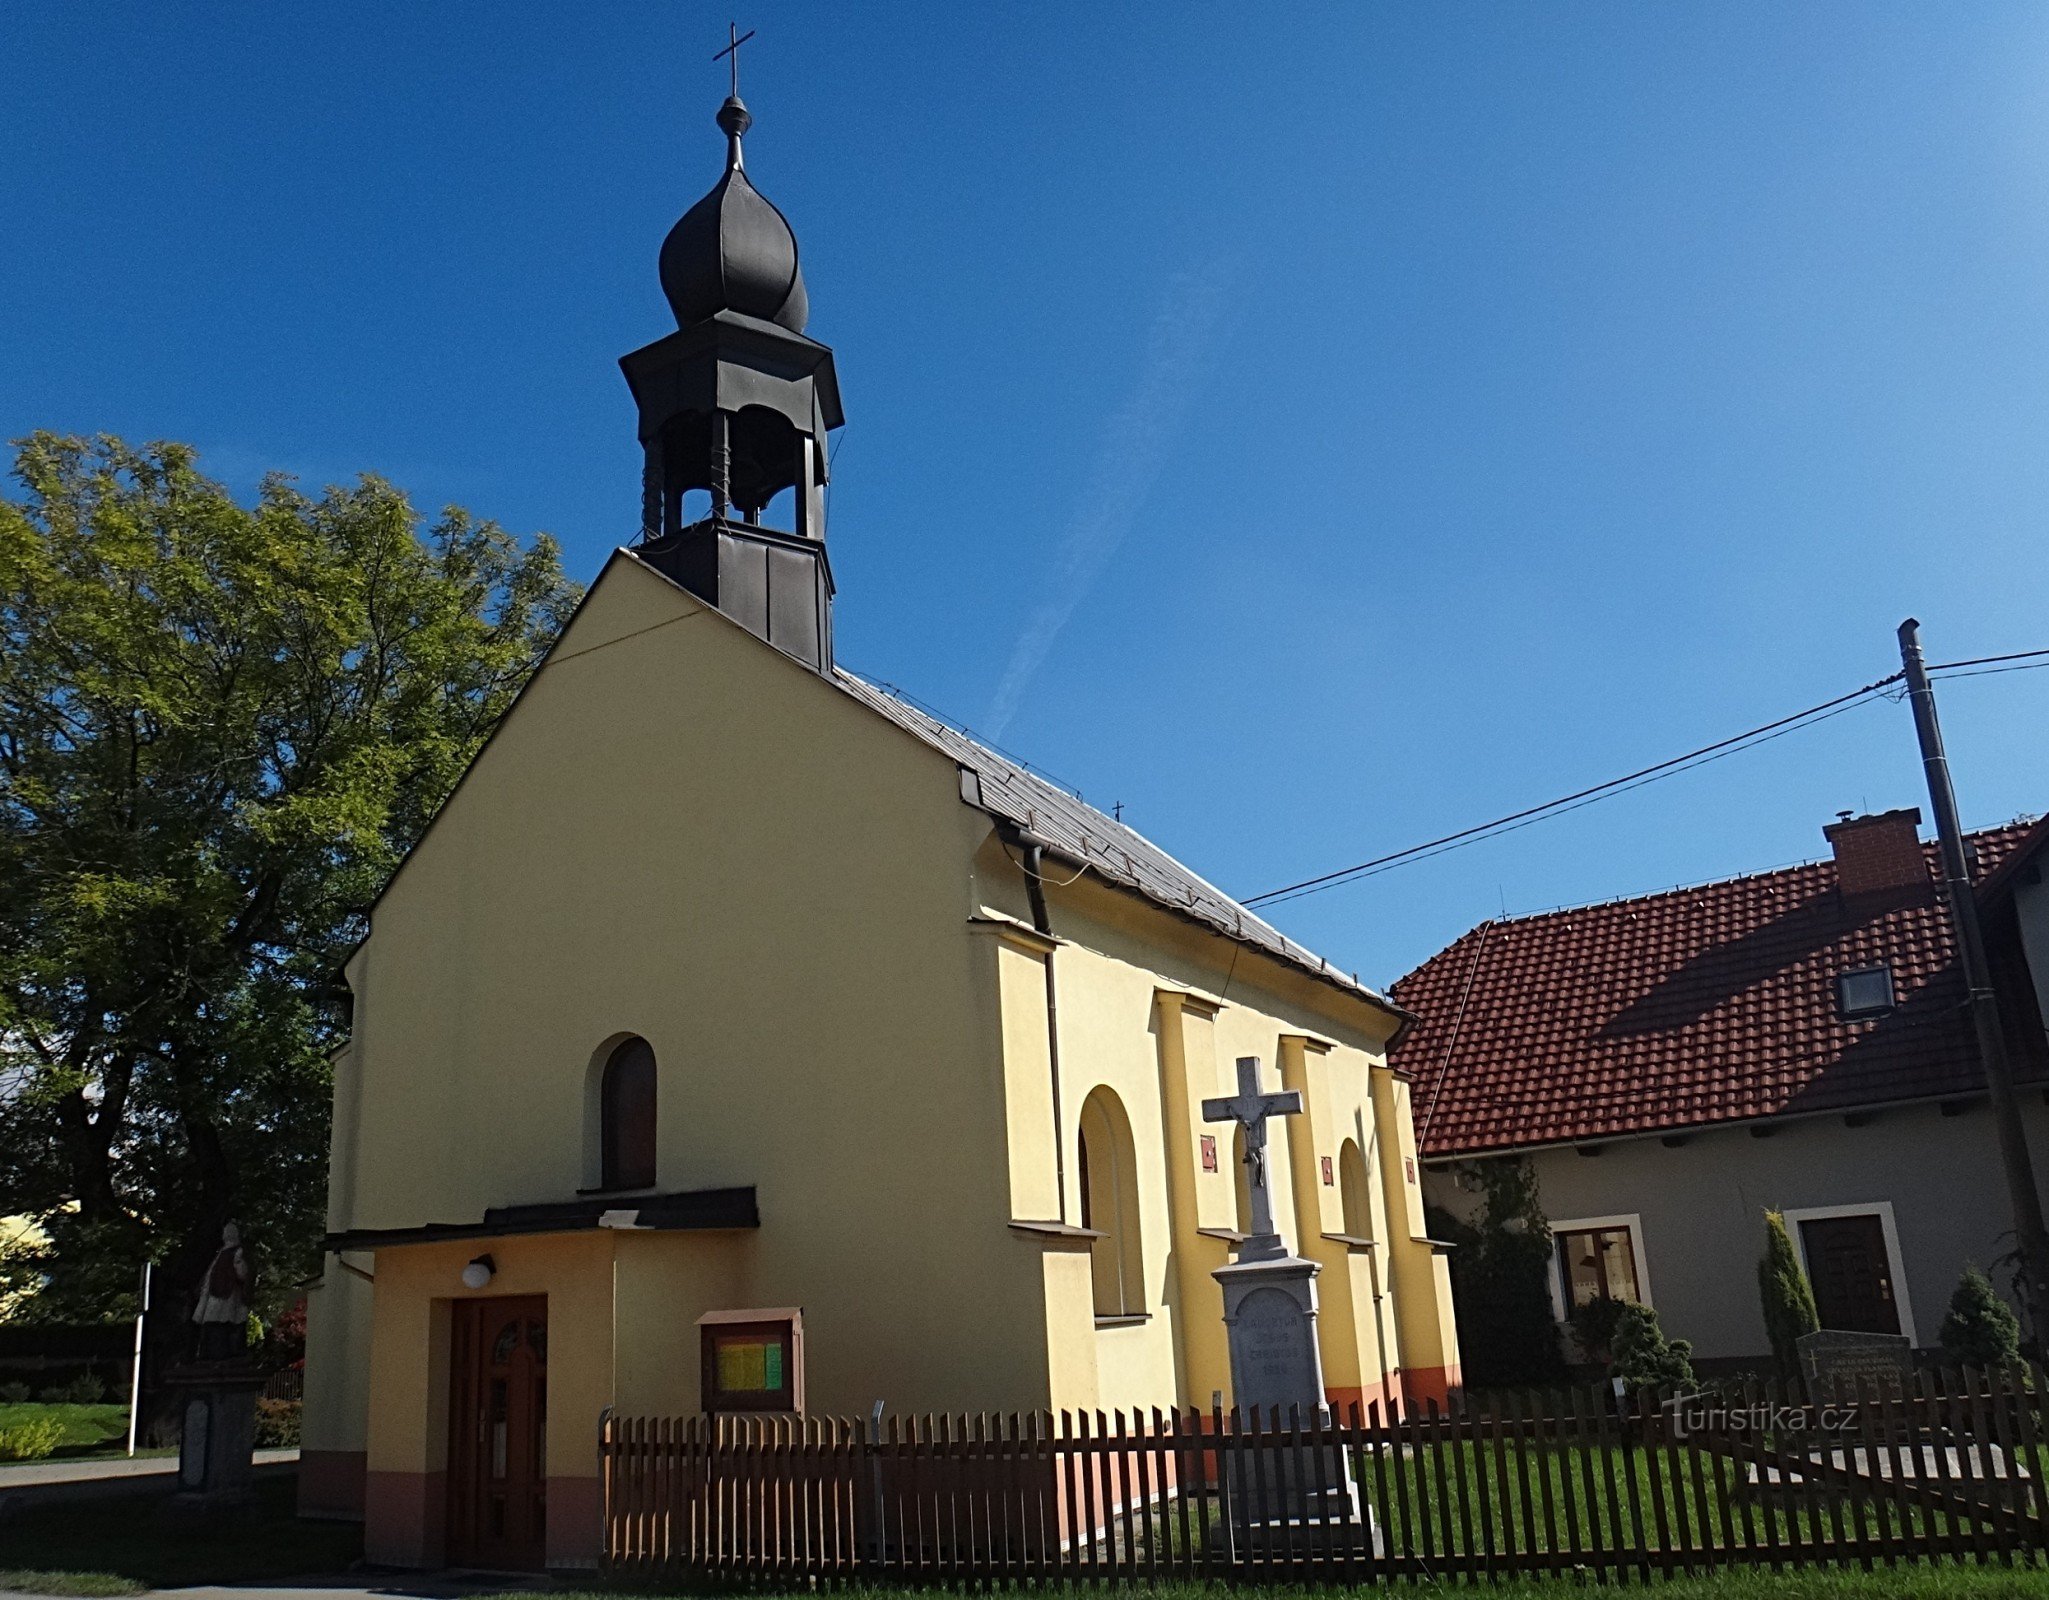 Věřňovice 圣彼得教堂伊西多尔